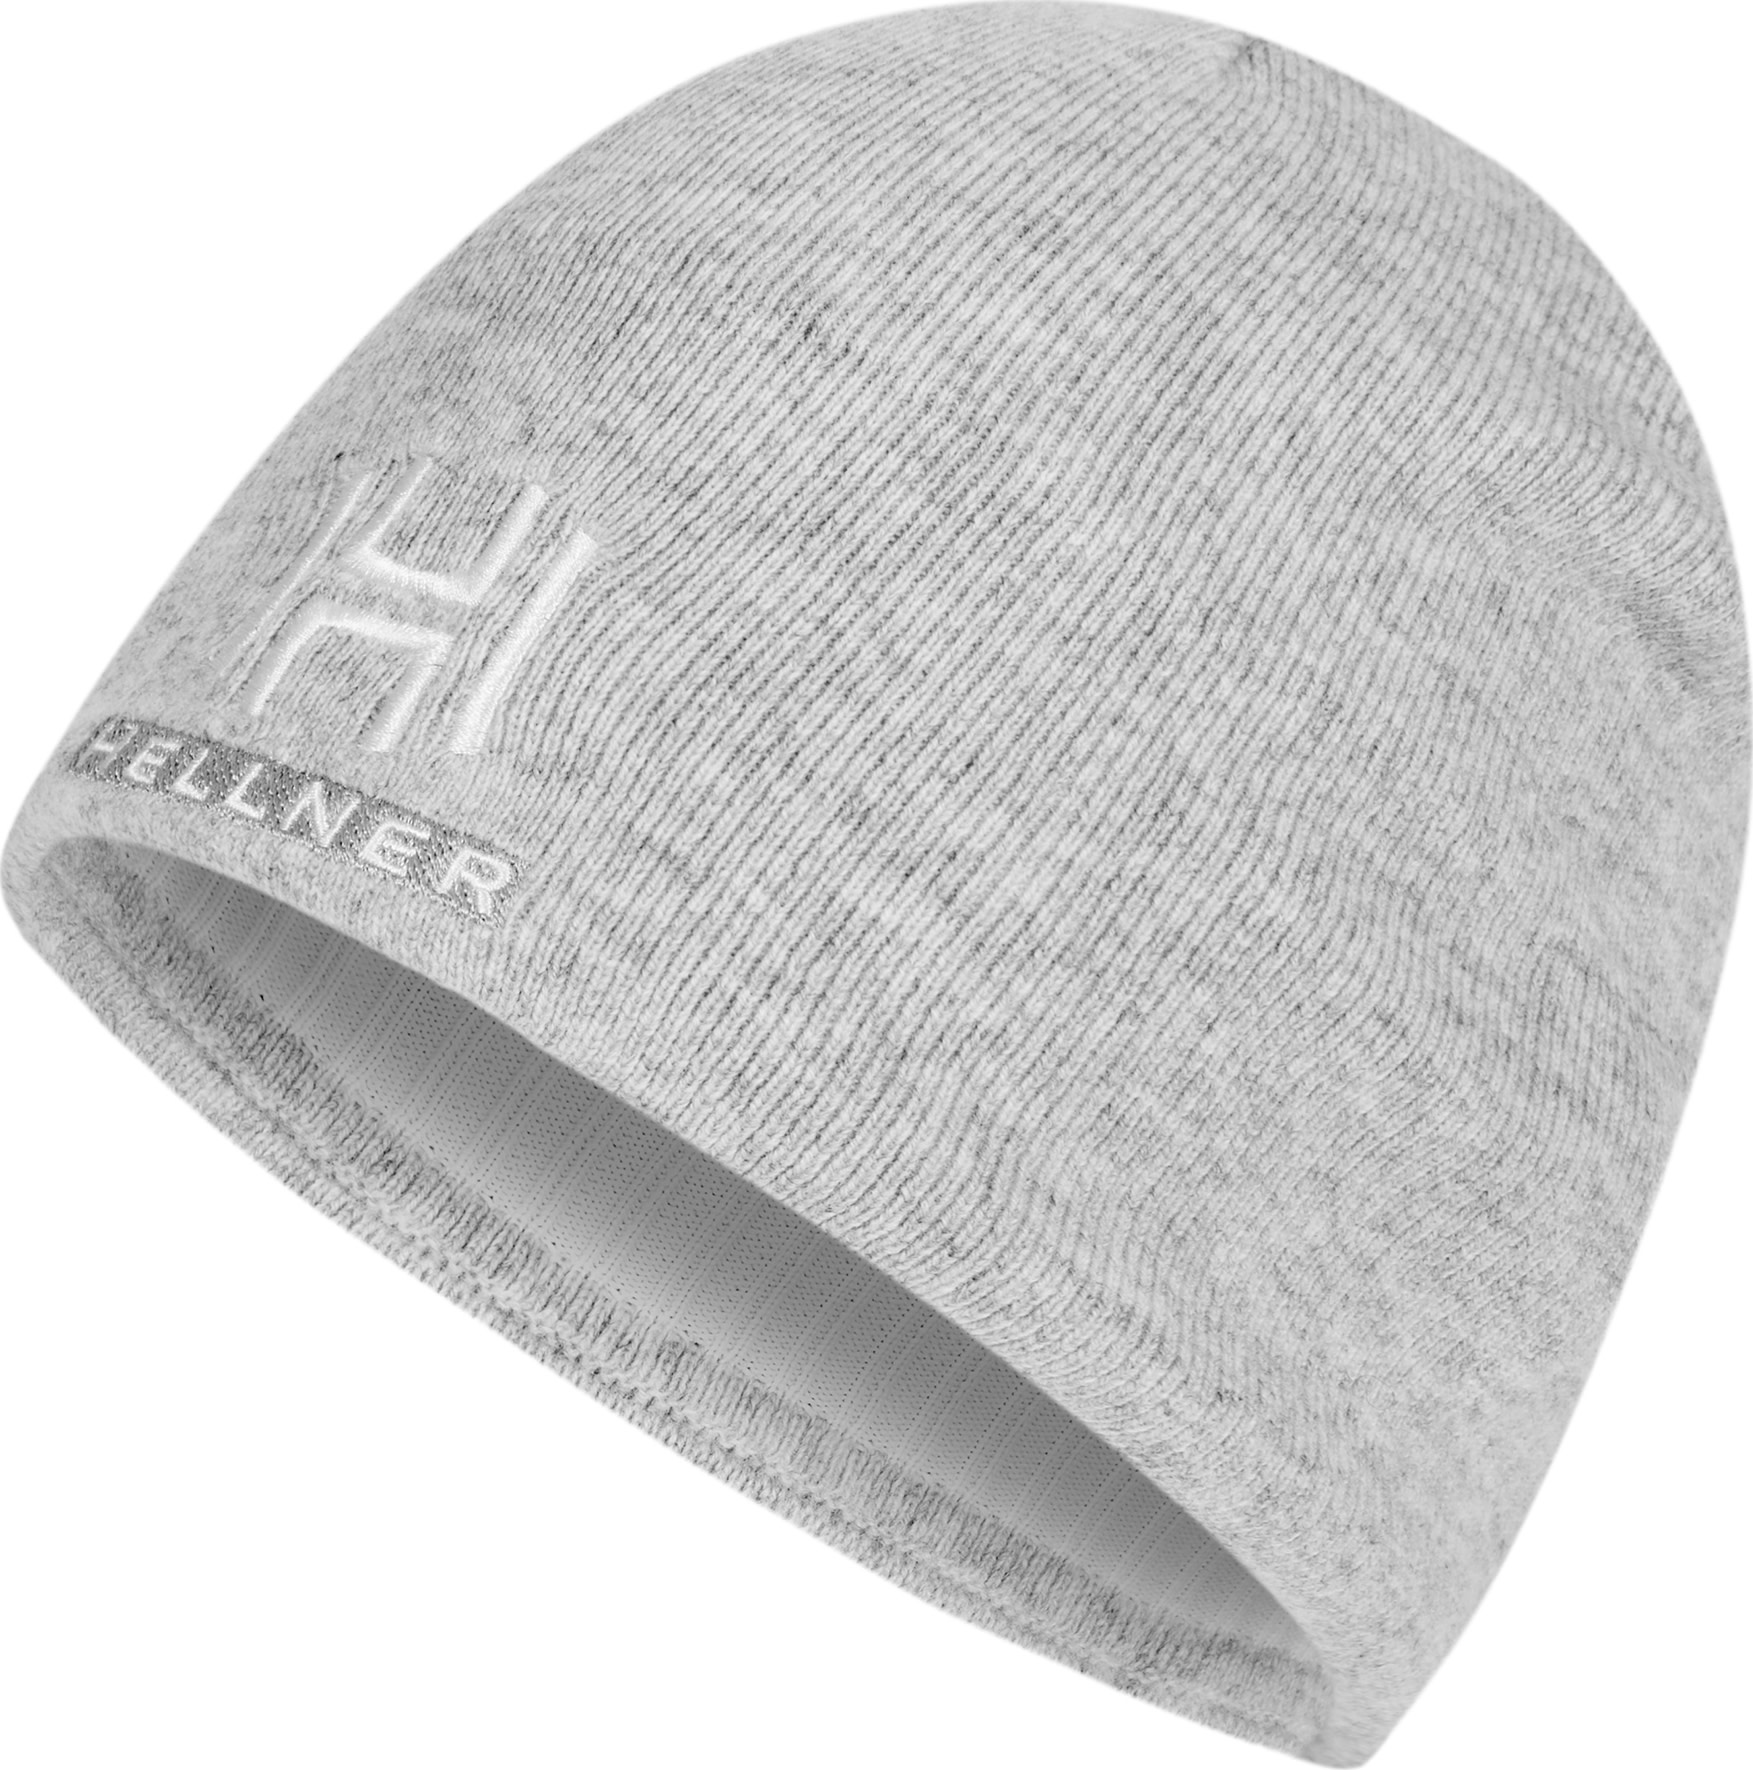 Hellner Avvakko Merino XC Ski Hat Grey Melange One Size, Grey Melange